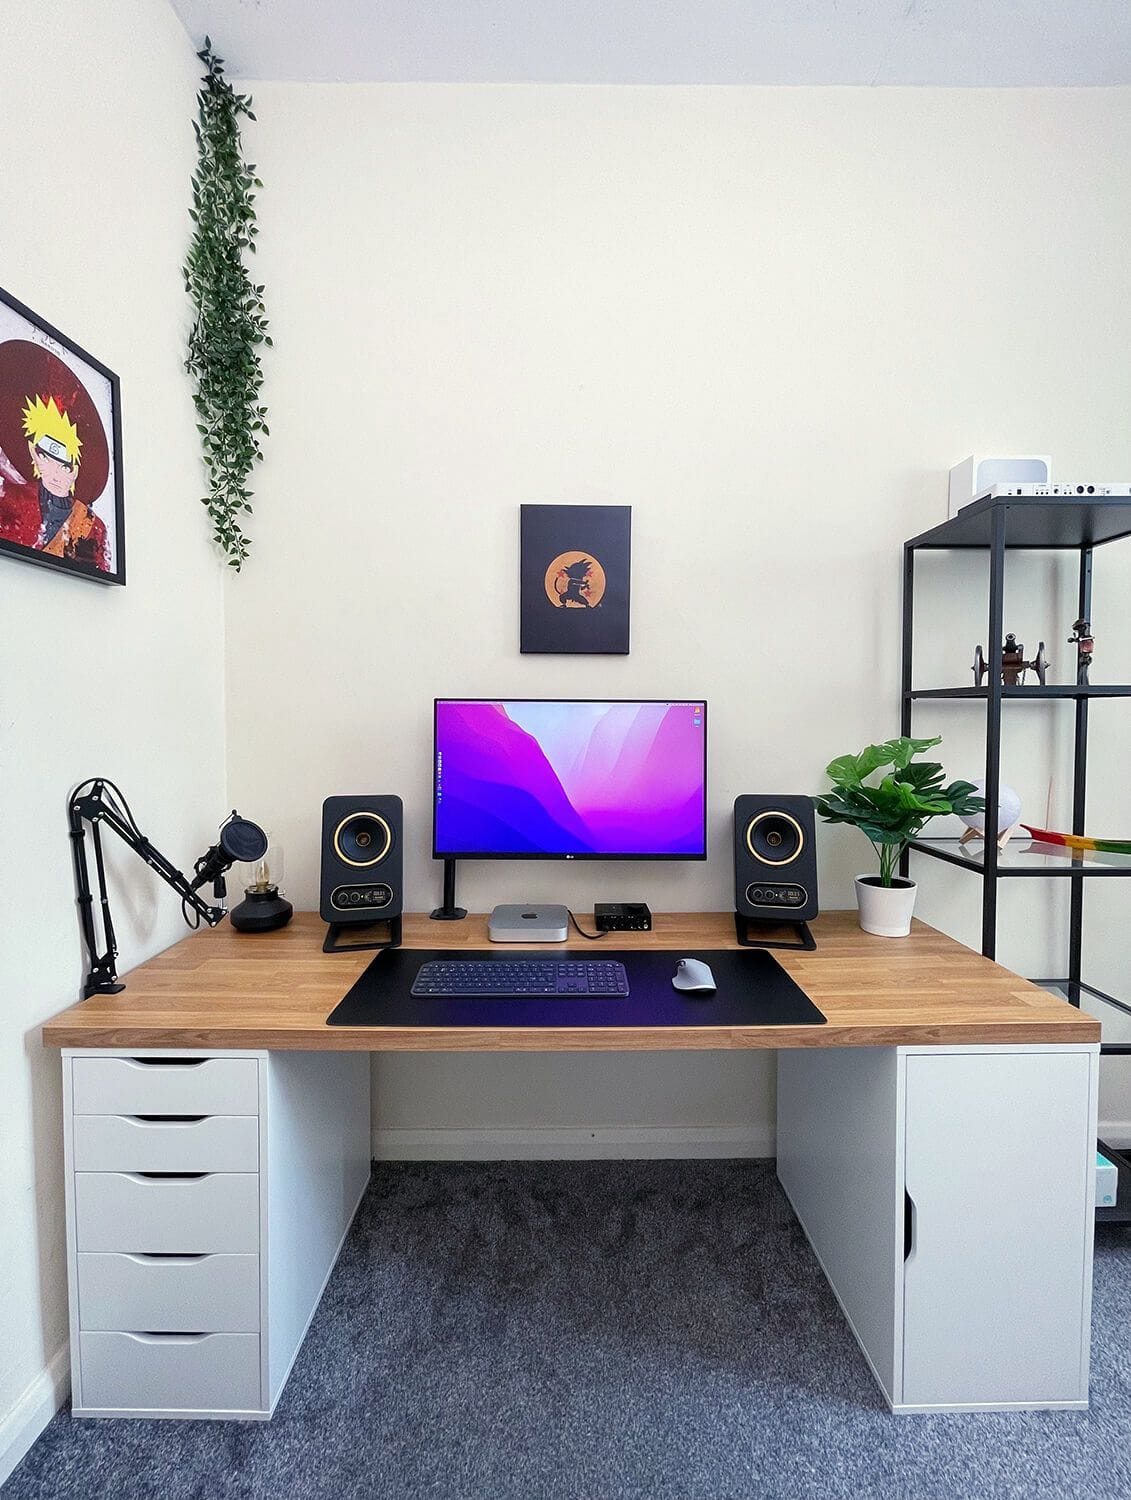 A budget IKEA desk setup